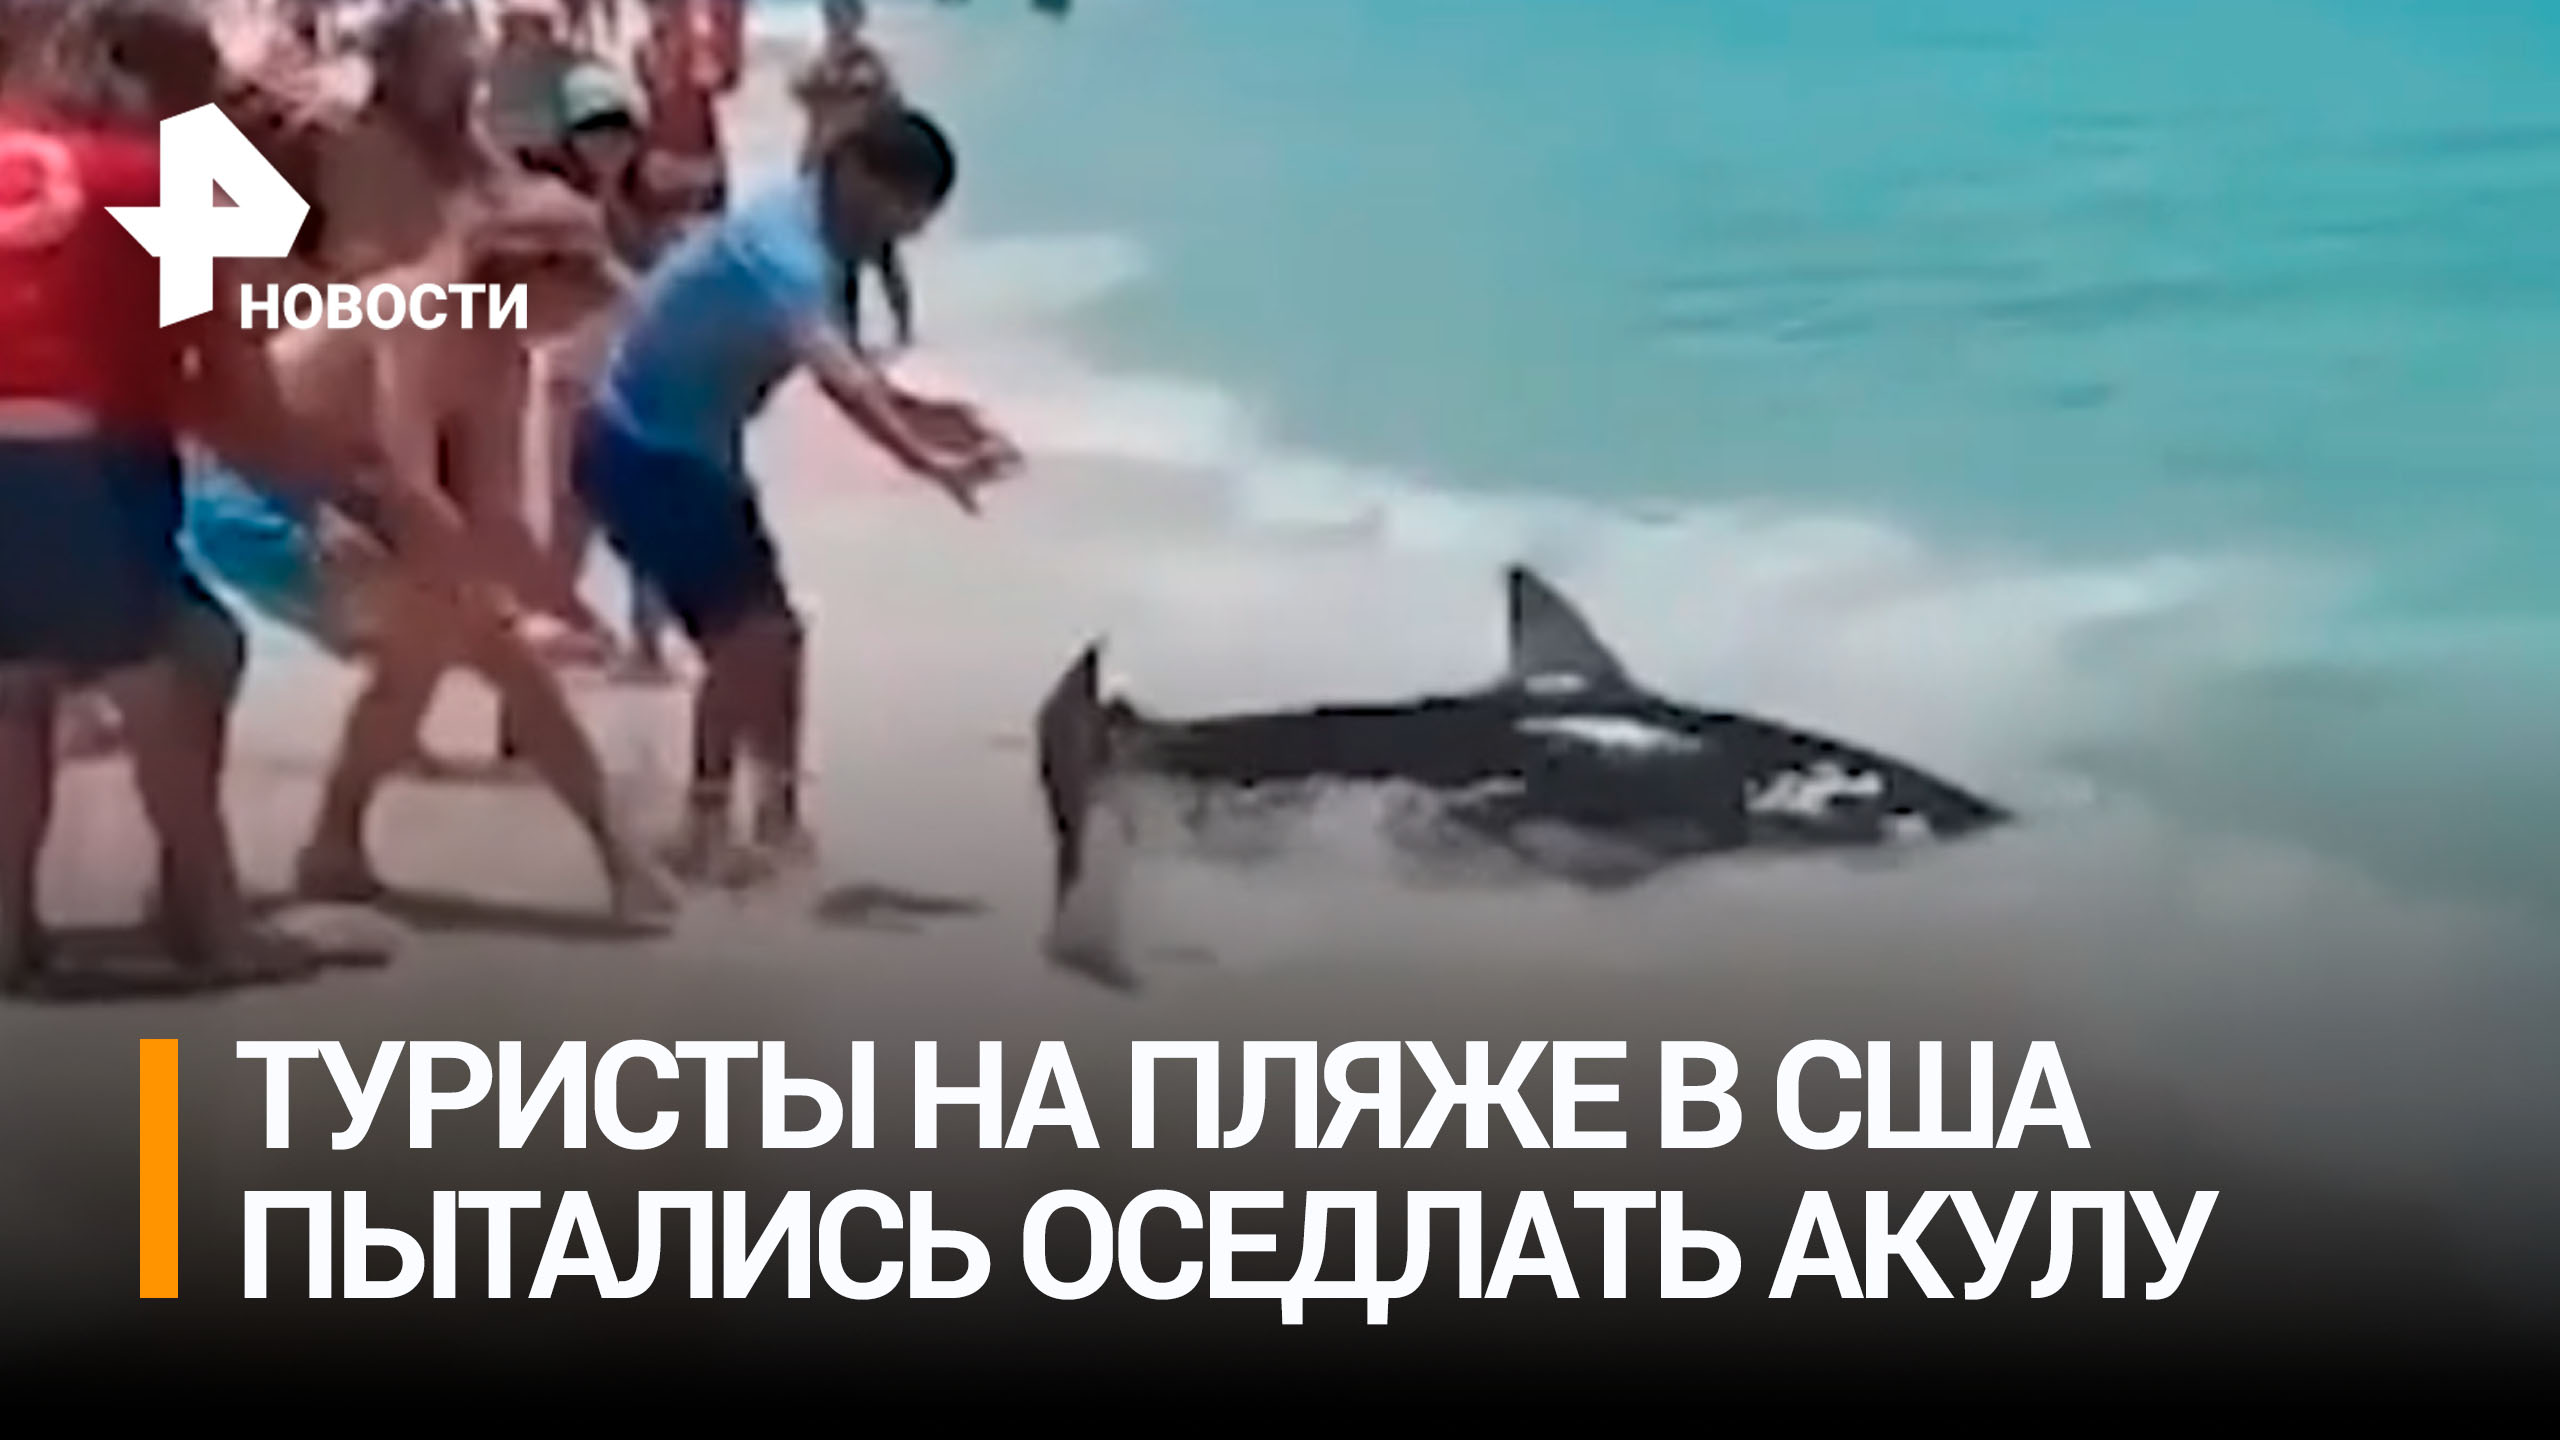 Туристы в США пытались "оседлать" акулу, пока хищница бессильно билась на мелководье / РЕН Новости